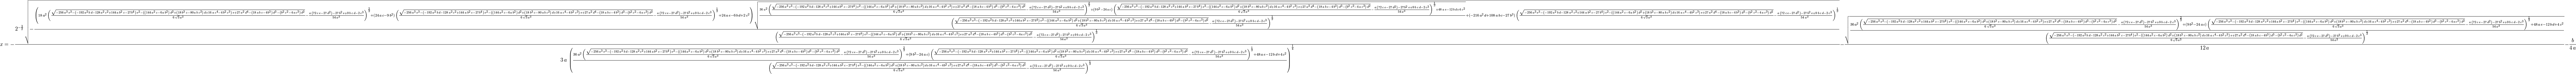 
x=-{{2^ {- {{3}\over{2}} }\,\sqrt{-{{\left(18\,a^2\,\left({{\sqrt{-256 \,a^3\,e^3-\left(-192\,a^2\,b\,d-128\,a^2\,c^2+144\,a\,b^2\,c-27\,b^4 \right)\,e^2-\left(\left(144\,a^2\,c-6\,a\,b^2\right)\,d^2+\left(18 \,b^3\,c-80\,a\,b\,c^2\right)\,d+16\,a\,c^4-4\,b^2\,c^3\right)\,e+27 \,a^2\,d^4-\left(18\,a\,b\,c-4\,b^3\right)\,d^3-\left(b^2\,c^2-4\,a \,c^3\right)\,d^2}}\over{6\,\sqrt{3}\,a^3}}-{{a\,\left(72\,c\,e-27\, d^2\right)-27\,b^2\,e+9\,b\,c\,d-2\,c^3}\over{54\,a^3}}\right)^{{{2 }\over{3}}}+\left(24\,a\,c-9\,b^2\right)\,\left({{\sqrt{-256\,a^3\,e ^3-\left(-192\,a^2\,b\,d-128\,a^2\,c^2+144\,a\,b^2\,c-27\,b^4\right) \,e^2-\left(\left(144\,a^2\,c-6\,a\,b^2\right)\,d^2+\left(18\,b^3\,c -80\,a\,b\,c^2\right)\,d+16\,a\,c^4-4\,b^2\,c^3\right)\,e+27\,a^2\,d ^4-\left(18\,a\,b\,c-4\,b^3\right)\,d^3-\left(b^2\,c^2-4\,a\,c^3 \right)\,d^2}}\over{6\,\sqrt{3}\,a^3}}-{{a\,\left(72\,c\,e-27\,d^2 \right)-27\,b^2\,e+9\,b\,c\,d-2\,c^3}\over{54\,a^3}}\right)^{{{1 }\over{3}}}+24\,a\,e-6\,b\,d+2\,c^2\right)\,\sqrt{{{36\,a^2\,\left( {{\sqrt{-256\,a^3\,e^3-\left(-192\,a^2\,b\,d-128\,a^2\,c^2+144\,a\,b ^2\,c-27\,b^4\right)\,e^2-\left(\left(144\,a^2\,c-6\,a\,b^2\right)\, d^2+\left(18\,b^3\,c-80\,a\,b\,c^2\right)\,d+16\,a\,c^4-4\,b^2\,c^3 \right)\,e+27\,a^2\,d^4-\left(18\,a\,b\,c-4\,b^3\right)\,d^3-\left(b ^2\,c^2-4\,a\,c^3\right)\,d^2}}\over{6\,\sqrt{3}\,a^3}}-{{a\,\left(72 \,c\,e-27\,d^2\right)-27\,b^2\,e+9\,b\,c\,d-2\,c^3}\over{54\,a^3}} \right)^{{{2}\over{3}}}+\left(9\,b^2-24\,a\,c\right)\,\left({{\sqrt{ -256\,a^3\,e^3-\left(-192\,a^2\,b\,d-128\,a^2\,c^2+144\,a\,b^2\,c-27 \,b^4\right)\,e^2-\left(\left(144\,a^2\,c-6\,a\,b^2\right)\,d^2+ \left(18\,b^3\,c-80\,a\,b\,c^2\right)\,d+16\,a\,c^4-4\,b^2\,c^3 \right)\,e+27\,a^2\,d^4-\left(18\,a\,b\,c-4\,b^3\right)\,d^3-\left(b ^2\,c^2-4\,a\,c^3\right)\,d^2}}\over{6\,\sqrt{3}\,a^3}}-{{a\,\left(72 \,c\,e-27\,d^2\right)-27\,b^2\,e+9\,b\,c\,d-2\,c^3}\over{54\,a^3}} \right)^{{{1}\over{3}}}+48\,a\,e-12\,b\,d+4\,c^2}\over{\left({{ \sqrt{-256\,a^3\,e^3-\left(-192\,a^2\,b\,d-128\,a^2\,c^2+144\,a\,b^2 \,c-27\,b^4\right)\,e^2-\left(\left(144\,a^2\,c-6\,a\,b^2\right)\,d^2 +\left(18\,b^3\,c-80\,a\,b\,c^2\right)\,d+16\,a\,c^4-4\,b^2\,c^3 \right)\,e+27\,a^2\,d^4-\left(18\,a\,b\,c-4\,b^3\right)\,d^3-\left(b ^2\,c^2-4\,a\,c^3\right)\,d^2}}\over{6\,\sqrt{3}\,a^3}}-{{a\,\left(72 \,c\,e-27\,d^2\right)-27\,b^2\,e+9\,b\,c\,d-2\,c^3}\over{54\,a^3}} \right)^{{{1}\over{3}}}}}}+\left(-216\,a^2\,d+108\,a\,b\,c-27\,b^3 \right)\,\left({{\sqrt{-256\,a^3\,e^3-\left(-192\,a^2\,b\,d-128\,a^2 \,c^2+144\,a\,b^2\,c-27\,b^4\right)\,e^2-\left(\left(144\,a^2\,c-6\, a\,b^2\right)\,d^2+\left(18\,b^3\,c-80\,a\,b\,c^2\right)\,d+16\,a\,c ^4-4\,b^2\,c^3\right)\,e+27\,a^2\,d^4-\left(18\,a\,b\,c-4\,b^3 \right)\,d^3-\left(b^2\,c^2-4\,a\,c^3\right)\,d^2}}\over{6\,\sqrt{3} \,a^3}}-{{a\,\left(72\,c\,e-27\,d^2\right)-27\,b^2\,e+9\,b\,c\,d-2\, c^3}\over{54\,a^3}}\right)^{{{1}\over{3}}}}\over{\left({{\sqrt{-256 \,a^3\,e^3-\left(-192\,a^2\,b\,d-128\,a^2\,c^2+144\,a\,b^2\,c-27\,b^4 \right)\,e^2-\left(\left(144\,a^2\,c-6\,a\,b^2\right)\,d^2+\left(18 \,b^3\,c-80\,a\,b\,c^2\right)\,d+16\,a\,c^4-4\,b^2\,c^3\right)\,e+27 \,a^2\,d^4-\left(18\,a\,b\,c-4\,b^3\right)\,d^3-\left(b^2\,c^2-4\,a \,c^3\right)\,d^2}}\over{6\,\sqrt{3}\,a^3}}-{{a\,\left(72\,c\,e-27\, d^2\right)-27\,b^2\,e+9\,b\,c\,d-2\,c^3}\over{54\,a^3}}\right)^{{{1 }\over{3}}}}}}}\over{3\,a\,\left({{36\,a^2\,\left({{\sqrt{-256\,a^3 \,e^3-\left(-192\,a^2\,b\,d-128\,a^2\,c^2+144\,a\,b^2\,c-27\,b^4 \right)\,e^2-\left(\left(144\,a^2\,c-6\,a\,b^2\right)\,d^2+\left(18 \,b^3\,c-80\,a\,b\,c^2\right)\,d+16\,a\,c^4-4\,b^2\,c^3\right)\,e+27 \,a^2\,d^4-\left(18\,a\,b\,c-4\,b^3\right)\,d^3-\left(b^2\,c^2-4\,a \,c^3\right)\,d^2}}\over{6\,\sqrt{3}\,a^3}}-{{a\,\left(72\,c\,e-27\, d^2\right)-27\,b^2\,e+9\,b\,c\,d-2\,c^3}\over{54\,a^3}}\right)^{{{2 }\over{3}}}+\left(9\,b^2-24\,a\,c\right)\,\left({{\sqrt{-256\,a^3\,e ^3-\left(-192\,a^2\,b\,d-128\,a^2\,c^2+144\,a\,b^2\,c-27\,b^4\right) \,e^2-\left(\left(144\,a^2\,c-6\,a\,b^2\right)\,d^2+\left(18\,b^3\,c -80\,a\,b\,c^2\right)\,d+16\,a\,c^4-4\,b^2\,c^3\right)\,e+27\,a^2\,d ^4-\left(18\,a\,b\,c-4\,b^3\right)\,d^3-\left(b^2\,c^2-4\,a\,c^3 \right)\,d^2}}\over{6\,\sqrt{3}\,a^3}}-{{a\,\left(72\,c\,e-27\,d^2 \right)-27\,b^2\,e+9\,b\,c\,d-2\,c^3}\over{54\,a^3}}\right)^{{{1 }\over{3}}}+48\,a\,e-12\,b\,d+4\,c^2}\over{\left({{\sqrt{-256\,a^3\, e^3-\left(-192\,a^2\,b\,d-128\,a^2\,c^2+144\,a\,b^2\,c-27\,b^4 \right)\,e^2-\left(\left(144\,a^2\,c-6\,a\,b^2\right)\,d^2+\left(18 \,b^3\,c-80\,a\,b\,c^2\right)\,d+16\,a\,c^4-4\,b^2\,c^3\right)\,e+27 \,a^2\,d^4-\left(18\,a\,b\,c-4\,b^3\right)\,d^3-\left(b^2\,c^2-4\,a \,c^3\right)\,d^2}}\over{6\,\sqrt{3}\,a^3}}-{{a\,\left(72\,c\,e-27\, d^2\right)-27\,b^2\,e+9\,b\,c\,d-2\,c^3}\over{54\,a^3}}\right)^{{{1 }\over{3}}}}}\right)^{{{1}\over{4}}}}}-{{\sqrt{{{36\,a^2\,\left({{ \sqrt{-256\,a^3\,e^3-\left(-192\,a^2\,b\,d-128\,a^2\,c^2+144\,a\,b^2 \,c-27\,b^4\right)\,e^2-\left(\left(144\,a^2\,c-6\,a\,b^2\right)\,d^2 +\left(18\,b^3\,c-80\,a\,b\,c^2\right)\,d+16\,a\,c^4-4\,b^2\,c^3 \right)\,e+27\,a^2\,d^4-\left(18\,a\,b\,c-4\,b^3\right)\,d^3-\left(b ^2\,c^2-4\,a\,c^3\right)\,d^2}}\over{6\,\sqrt{3}\,a^3}}-{{a\,\left(72 \,c\,e-27\,d^2\right)-27\,b^2\,e+9\,b\,c\,d-2\,c^3}\over{54\,a^3}} \right)^{{{2}\over{3}}}+\left(9\,b^2-24\,a\,c\right)\,\left({{\sqrt{ -256\,a^3\,e^3-\left(-192\,a^2\,b\,d-128\,a^2\,c^2+144\,a\,b^2\,c-27 \,b^4\right)\,e^2-\left(\left(144\,a^2\,c-6\,a\,b^2\right)\,d^2+ \left(18\,b^3\,c-80\,a\,b\,c^2\right)\,d+16\,a\,c^4-4\,b^2\,c^3 \right)\,e+27\,a^2\,d^4-\left(18\,a\,b\,c-4\,b^3\right)\,d^3-\left(b ^2\,c^2-4\,a\,c^3\right)\,d^2}}\over{6\,\sqrt{3}\,a^3}}-{{a\,\left(72 \,c\,e-27\,d^2\right)-27\,b^2\,e+9\,b\,c\,d-2\,c^3}\over{54\,a^3}} \right)^{{{1}\over{3}}}+48\,a\,e-12\,b\,d+4\,c^2}\over{\left({{ \sqrt{-256\,a^3\,e^3-\left(-192\,a^2\,b\,d-128\,a^2\,c^2+144\,a\,b^2 \,c-27\,b^4\right)\,e^2-\left(\left(144\,a^2\,c-6\,a\,b^2\right)\,d^2 +\left(18\,b^3\,c-80\,a\,b\,c^2\right)\,d+16\,a\,c^4-4\,b^2\,c^3 \right)\,e+27\,a^2\,d^4-\left(18\,a\,b\,c-4\,b^3\right)\,d^3-\left(b ^2\,c^2-4\,a\,c^3\right)\,d^2}}\over{6\,\sqrt{3}\,a^3}}-{{a\,\left(72 \,c\,e-27\,d^2\right)-27\,b^2\,e+9\,b\,c\,d-2\,c^3}\over{54\,a^3}} \right)^{{{1}\over{3}}}}}}}\over{12\,a}}-{{b}\over{4\,a}}
